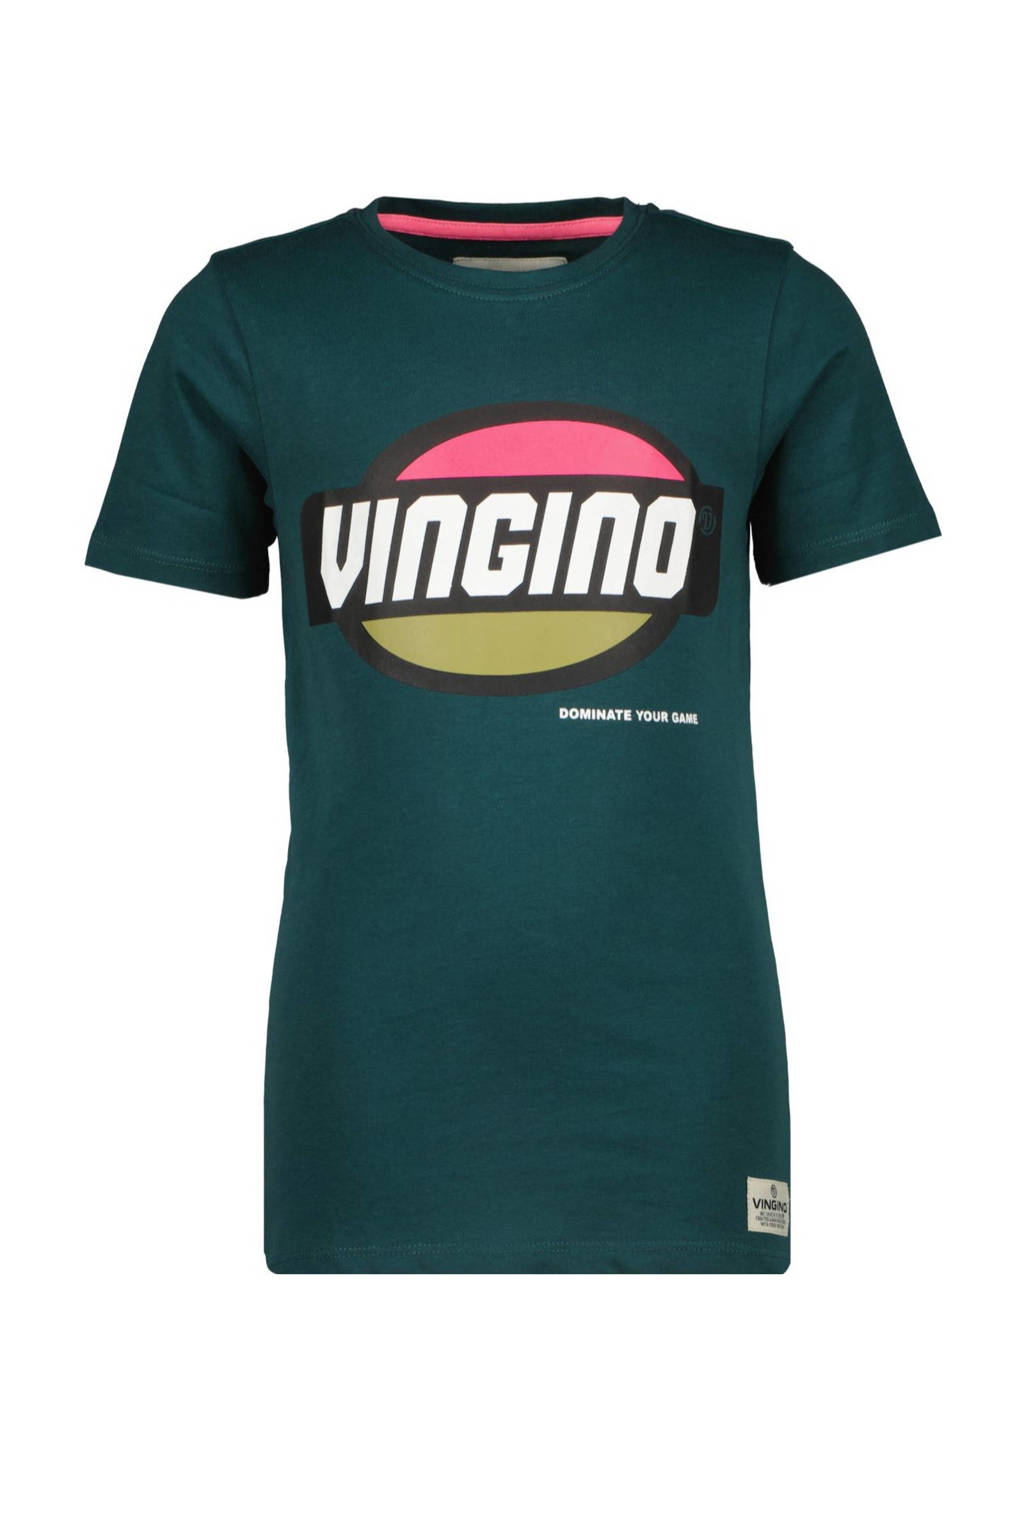 Vingino T-shirt Hufo met logo donkergroen